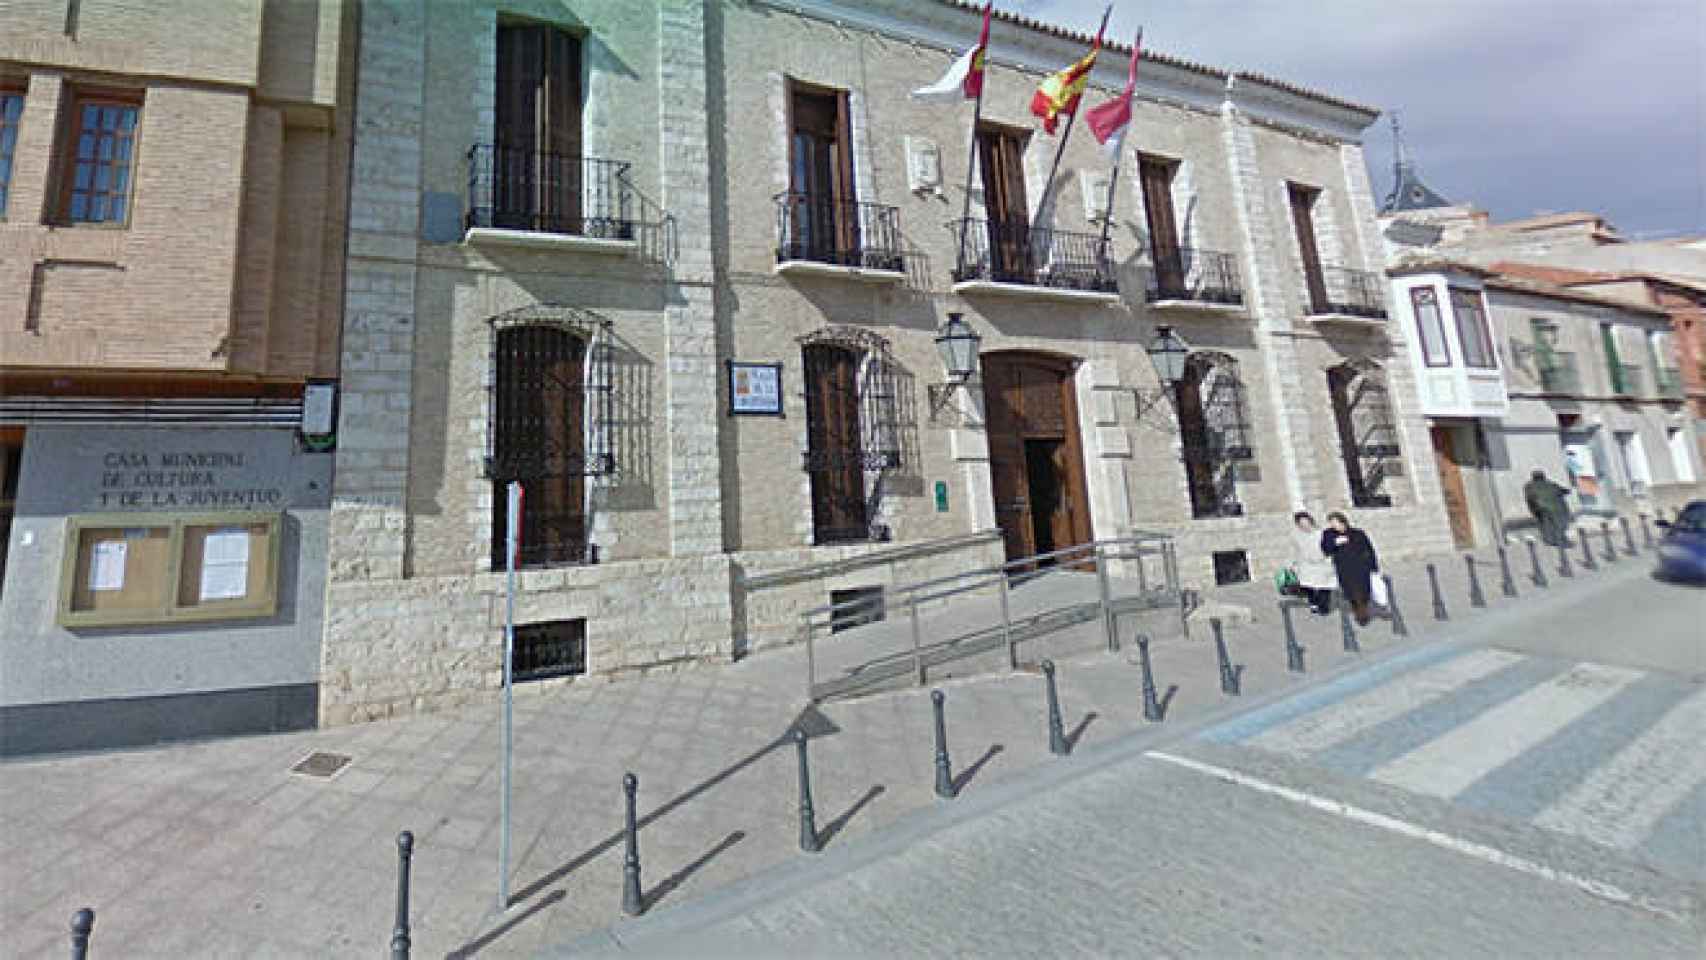 FOTO: Ayuntamiento de Villarrubia (Google Maps)